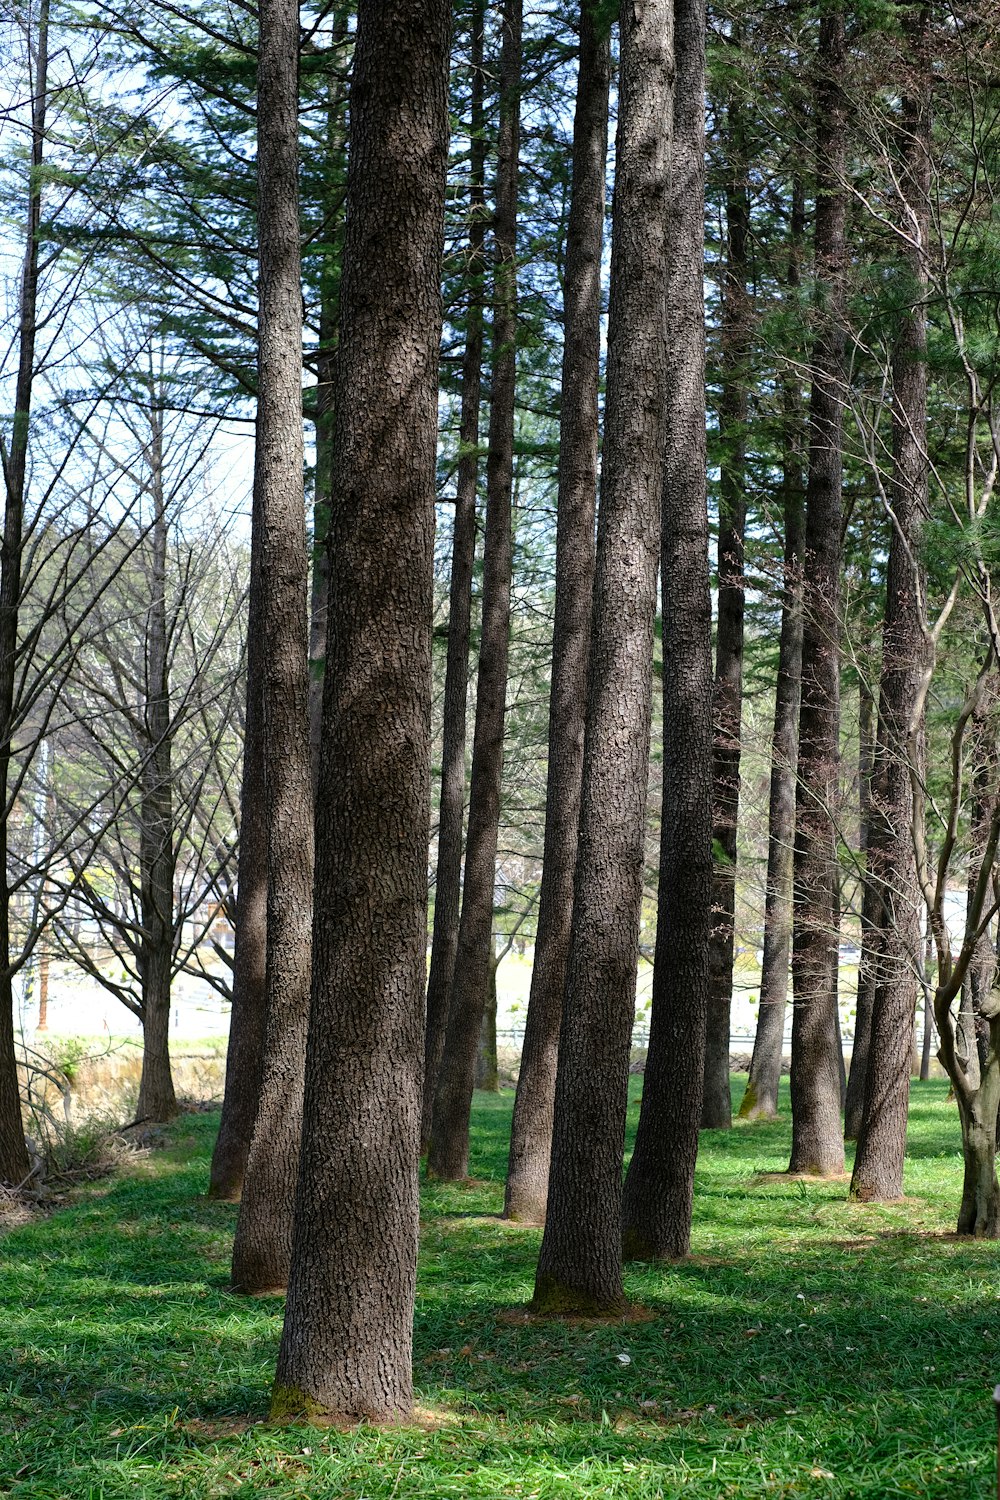 Un banco de parque sentado en medio de un bosque